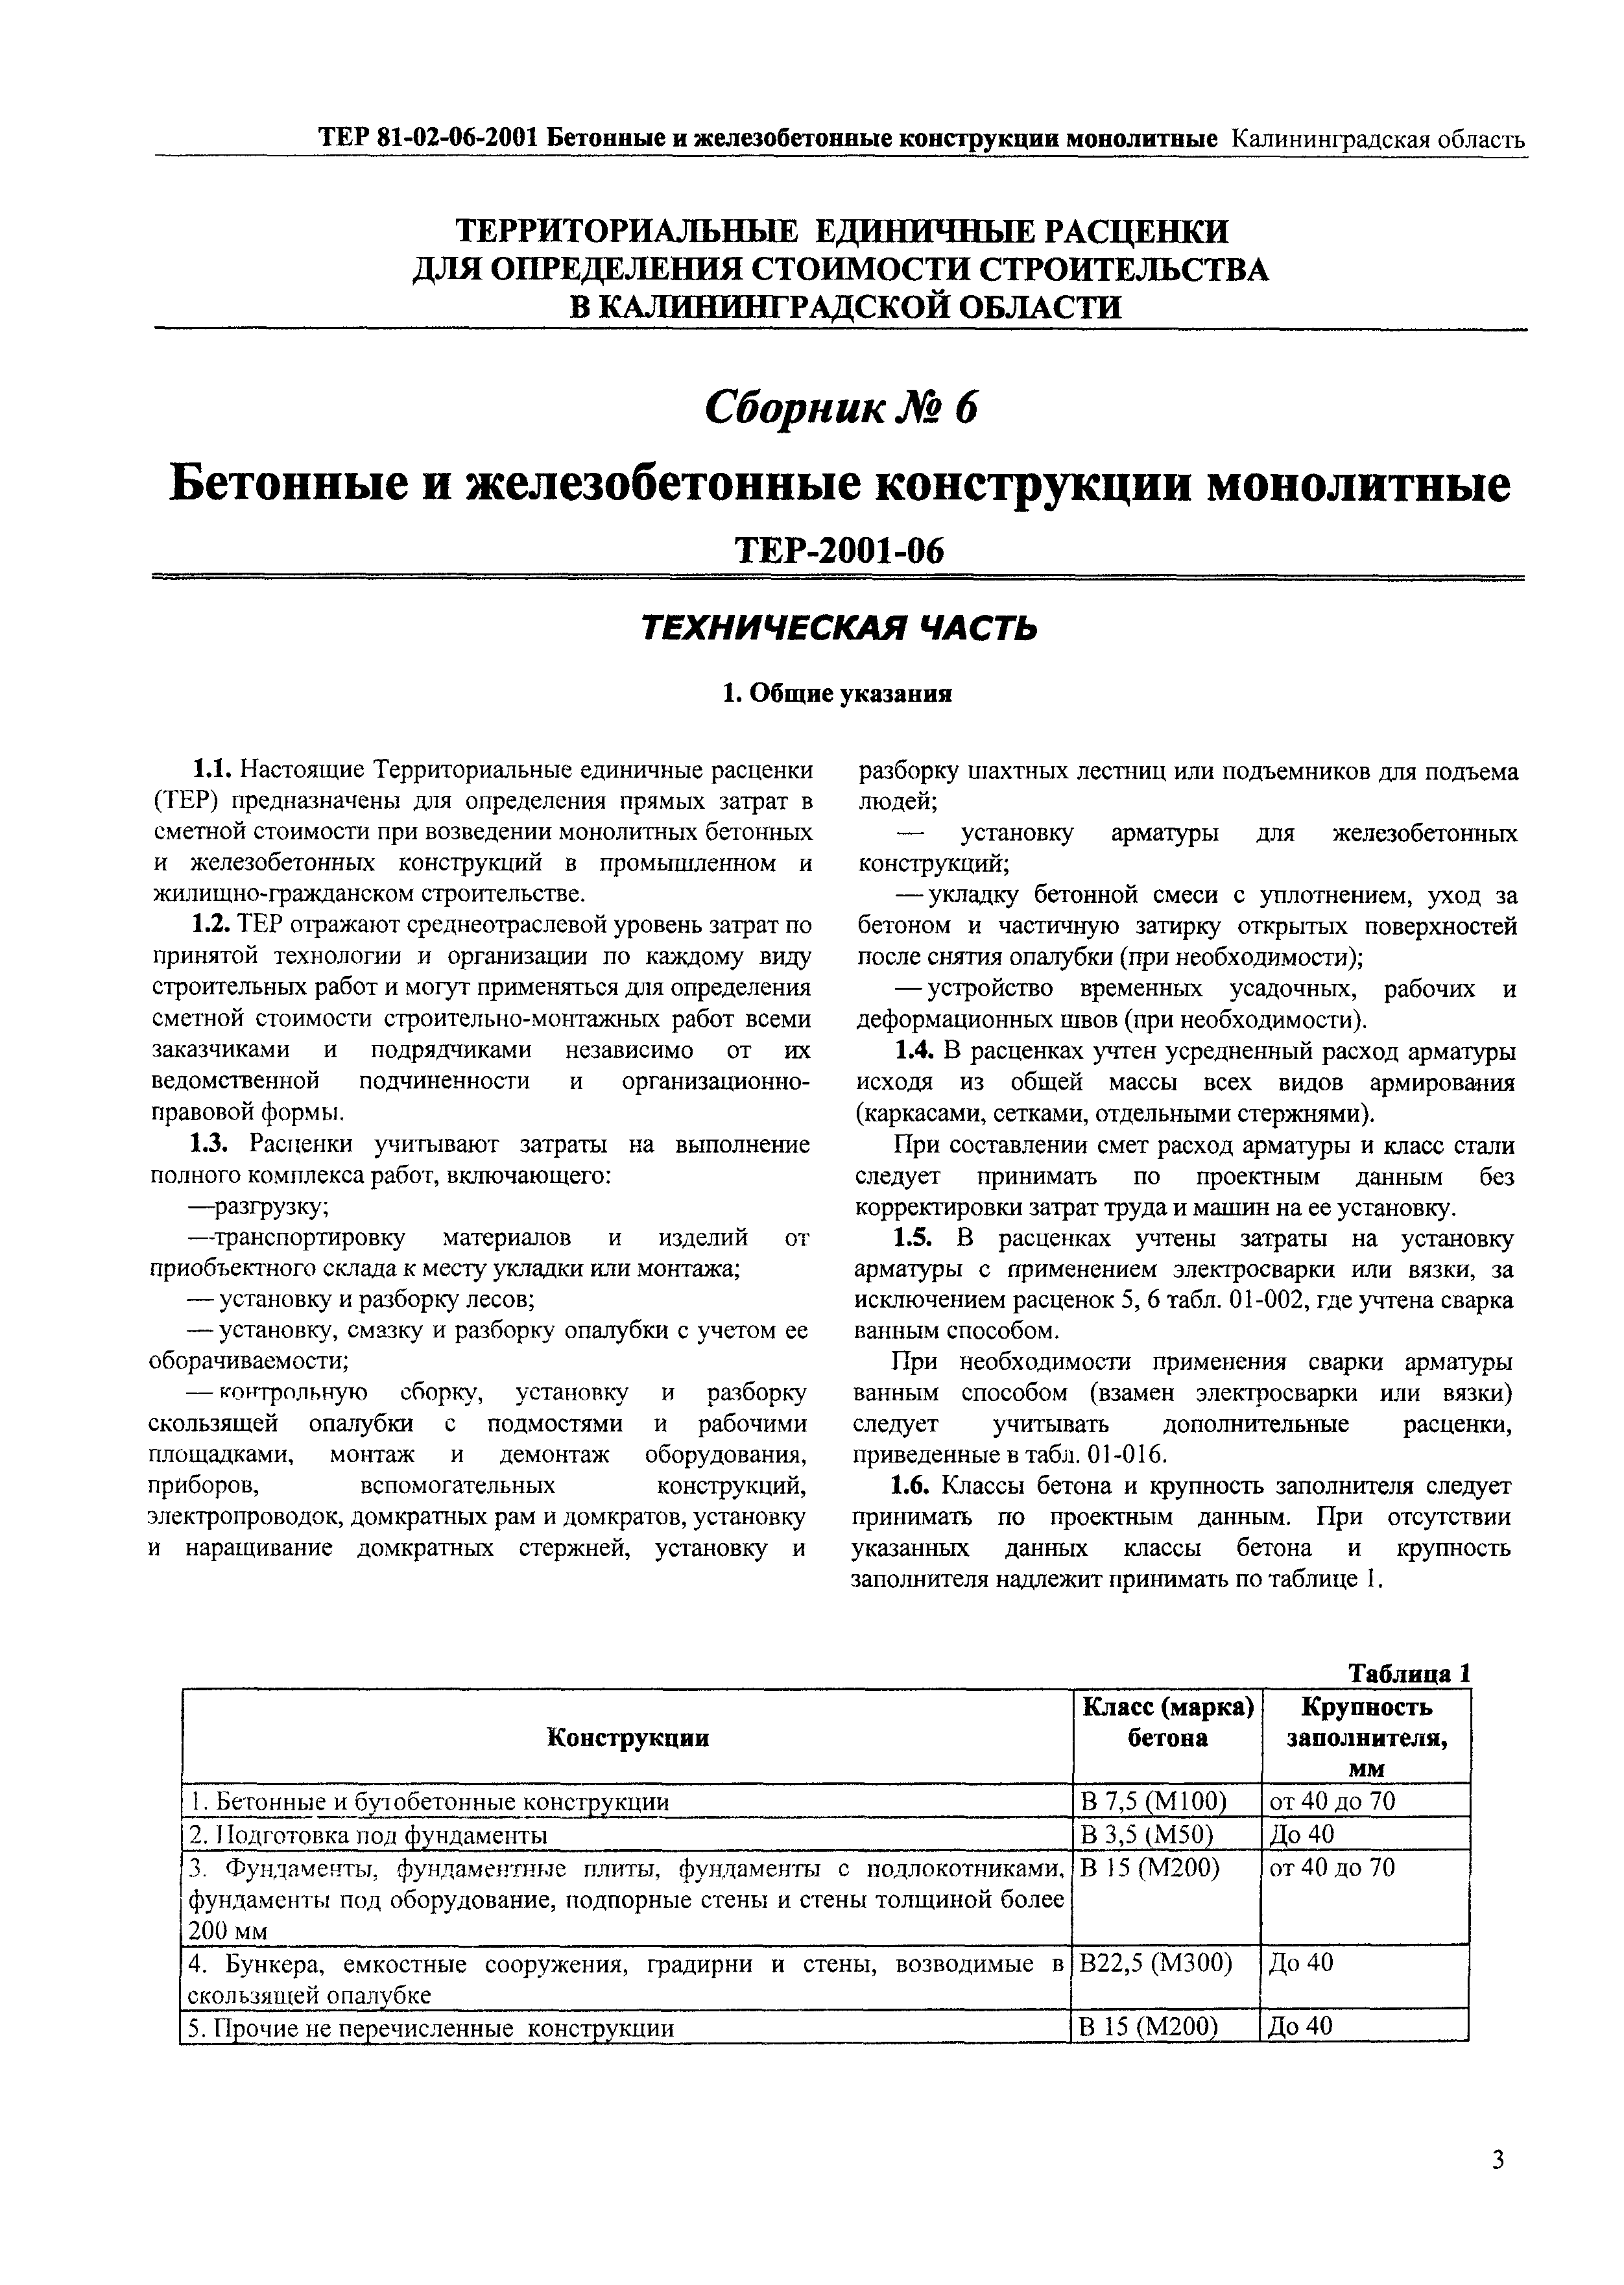 ТЕР Калининградской области 2001-06